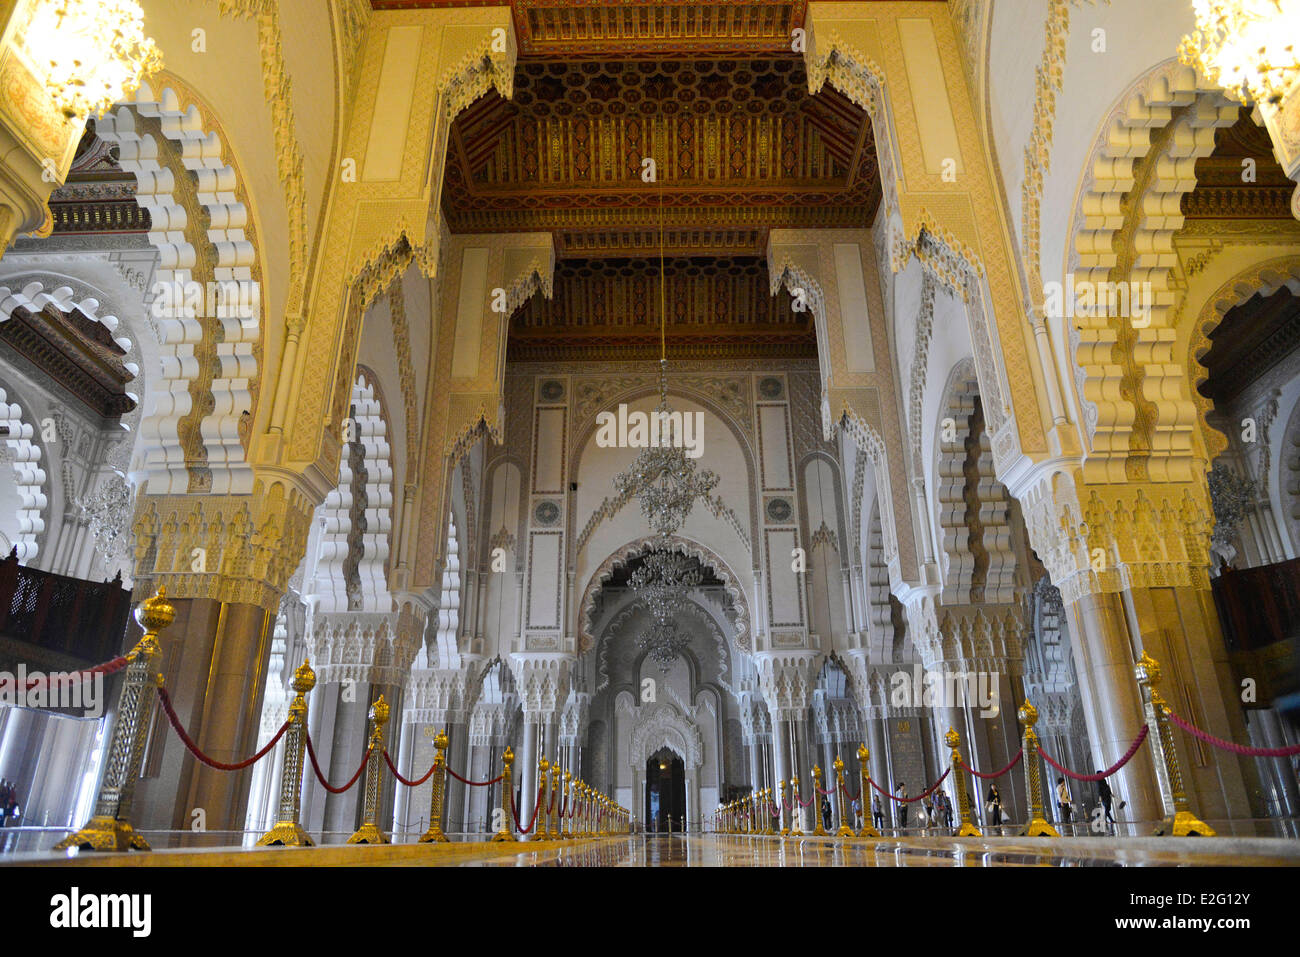 Marocco Casablanca grande moschea Hassan II di musulmani in stile arabo costruito dall'architetto Michel Pinseau nel 1986 sala di preghiera Foto Stock